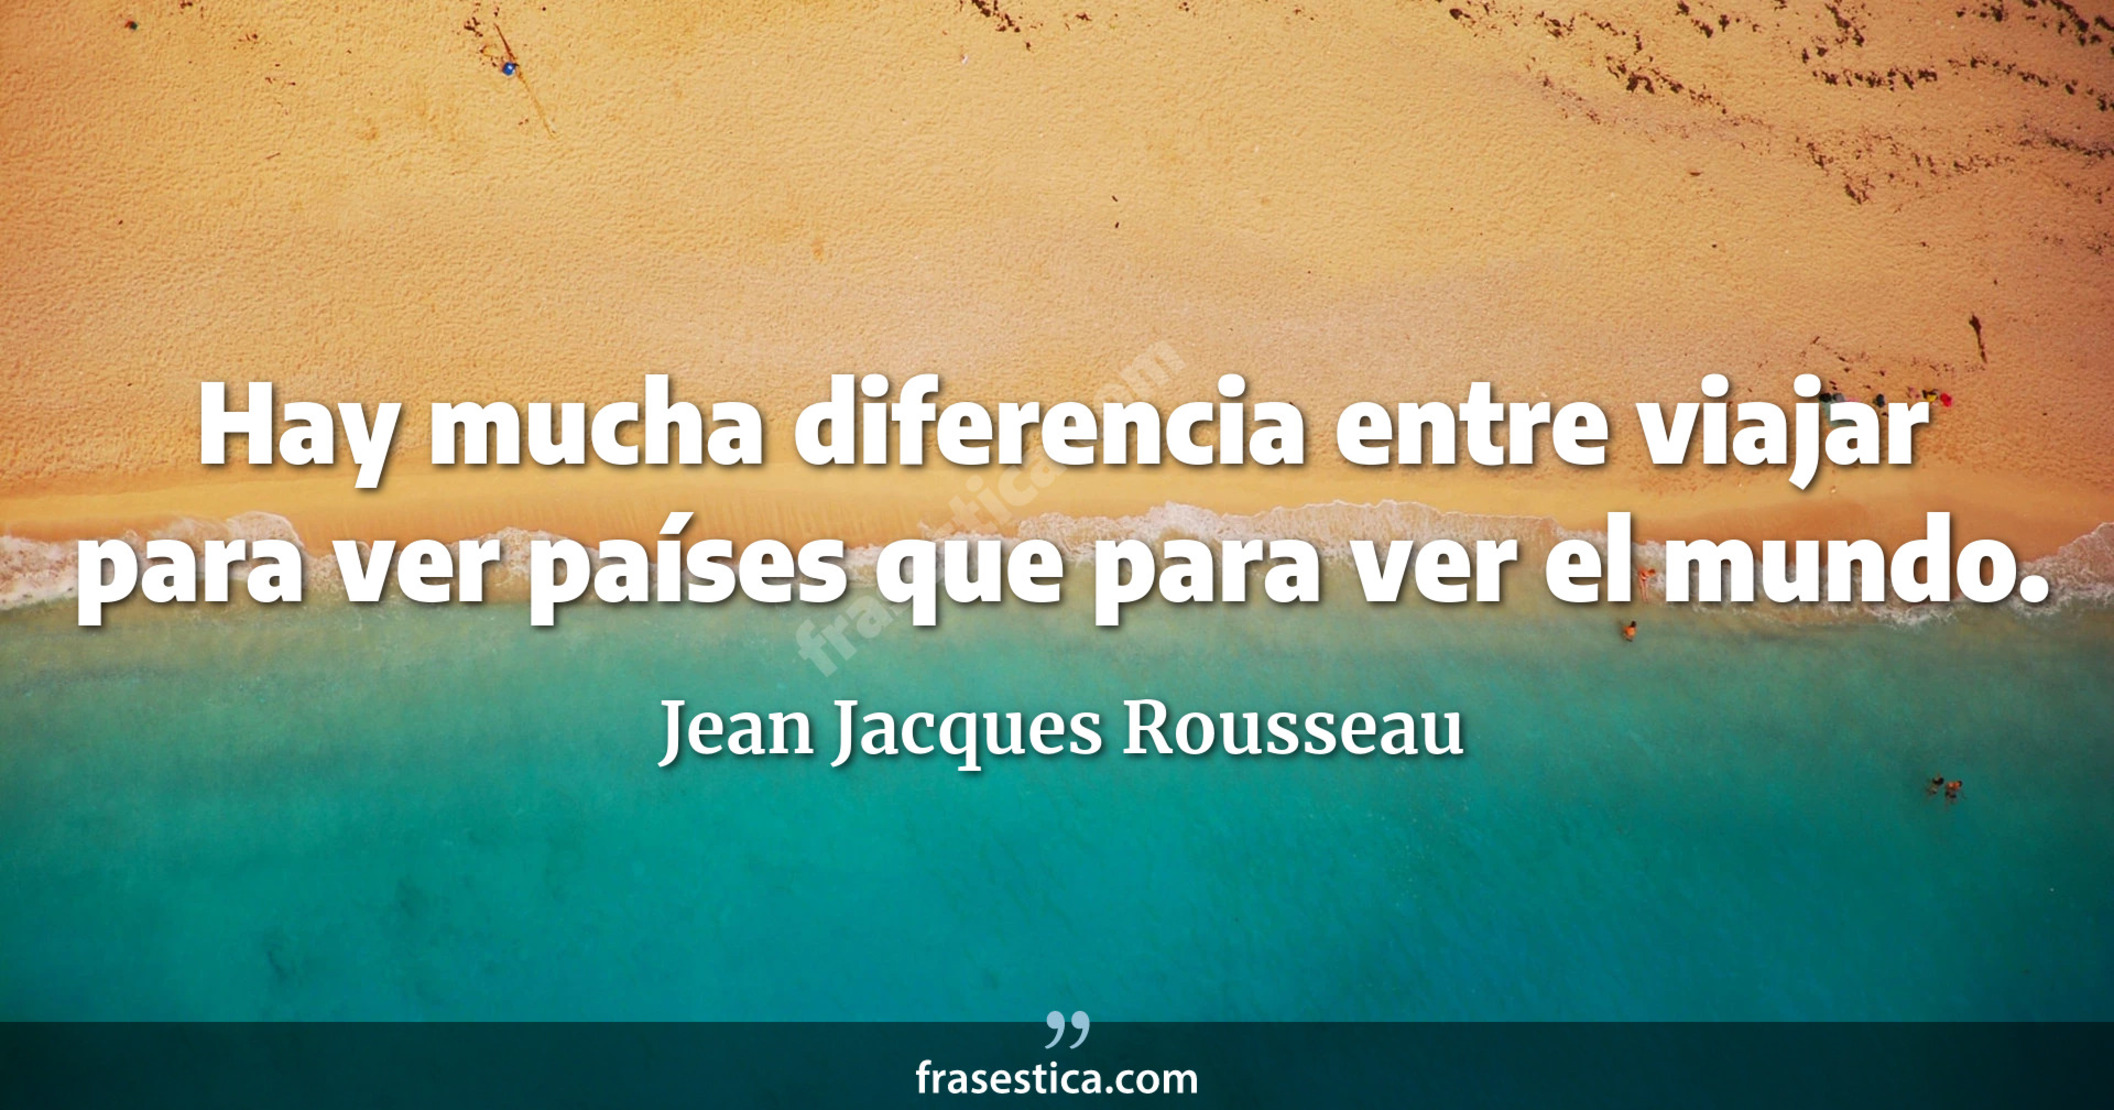 Hay mucha diferencia entre viajar para ver países que para ver el mundo. - Jean Jacques Rousseau